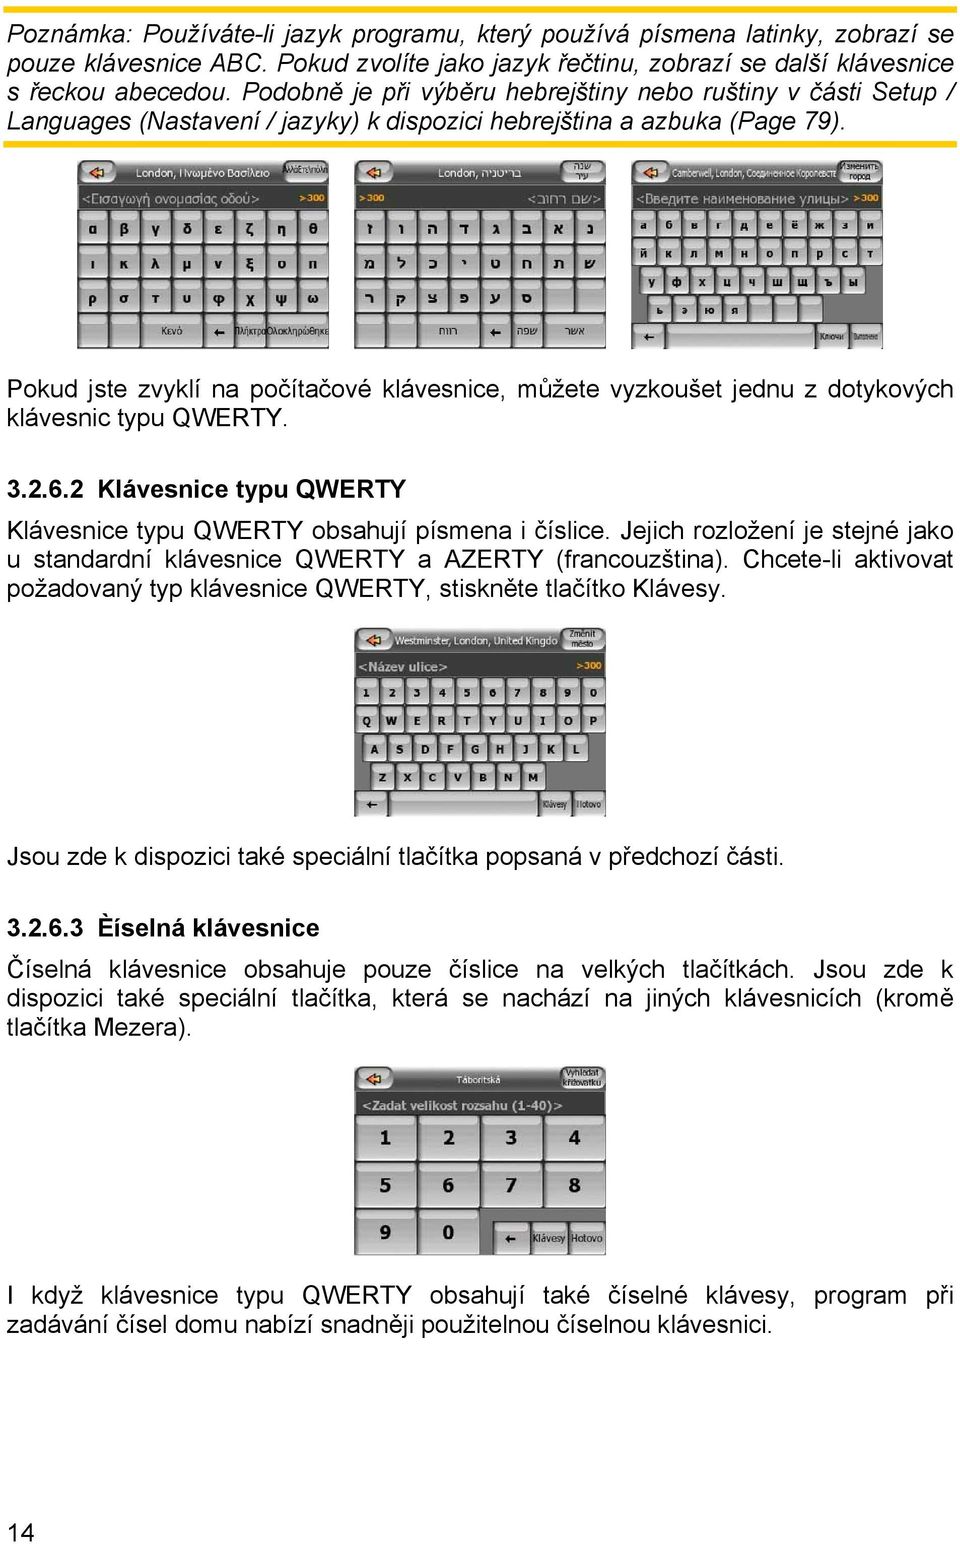 Pokud jste zvyklí na počítačové klávesnice, můžete vyzkoušet jednu z dotykových klávesnic typu QWERTY. 3.2.6.2 Klávesnice typu QWERTY Klávesnice typu QWERTY obsahují písmena i číslice.